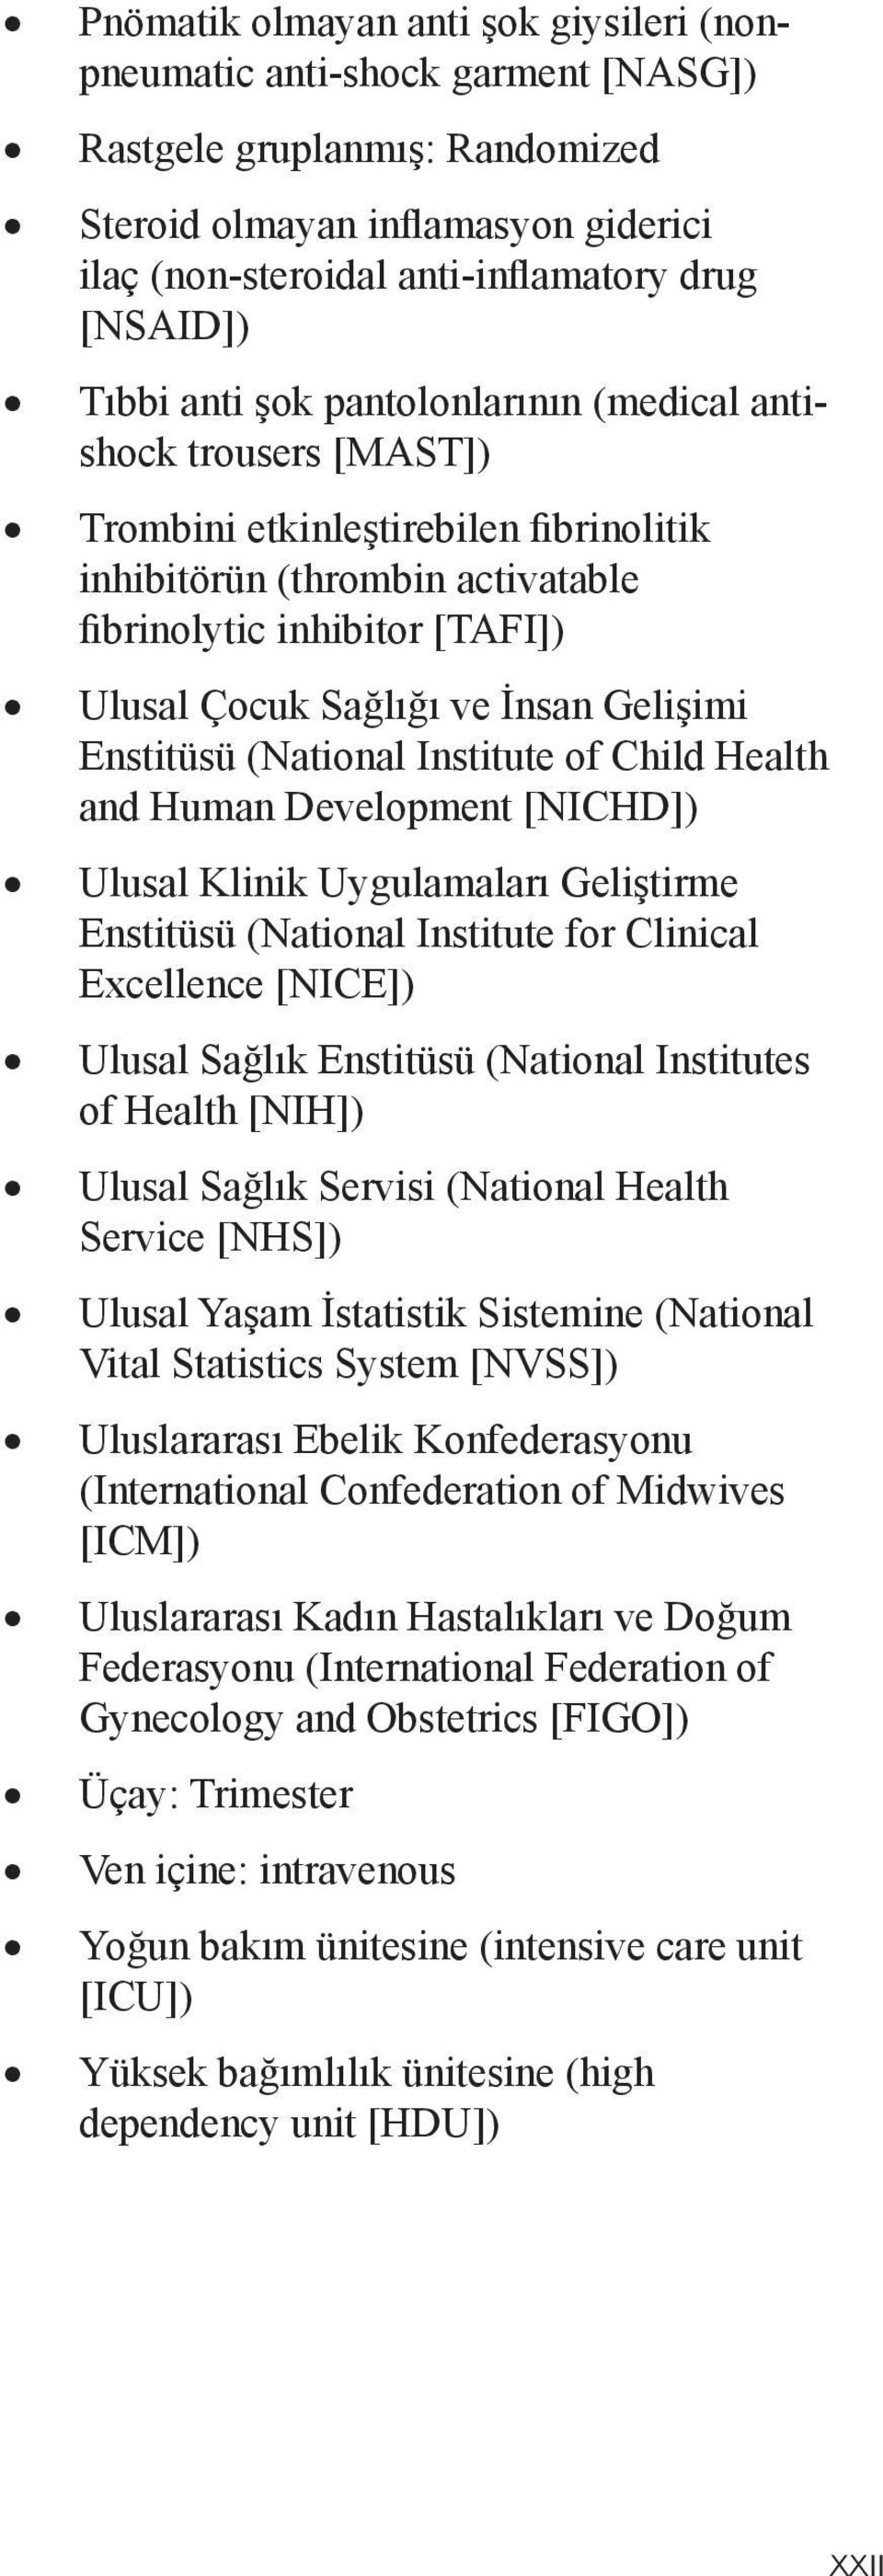 İnsan Gelişimi Enstitüsü (National Institute of Child Health and Human Development [NICHD]) Ulusal Klinik Uygulamaları Geliştirme Enstitüsü (National Institute for Clinical Excellence [NICE]) Ulusal